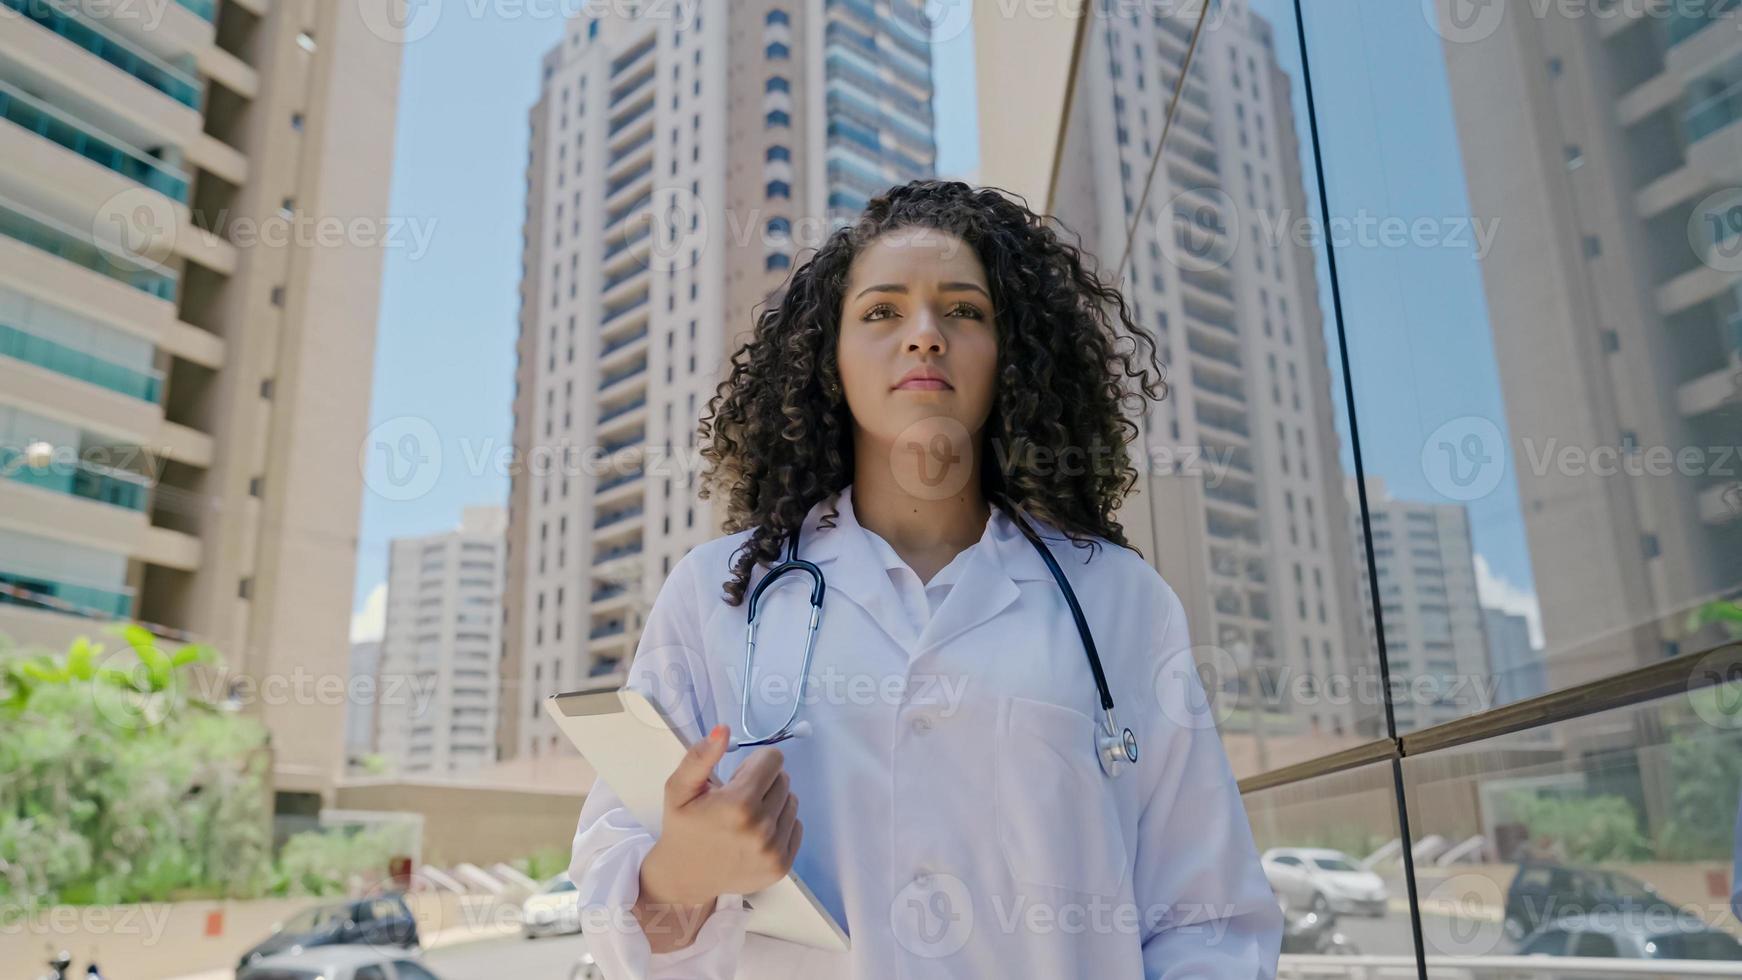 jovem médica latina usa uniforme branco, usando tablet digital no hospital foto